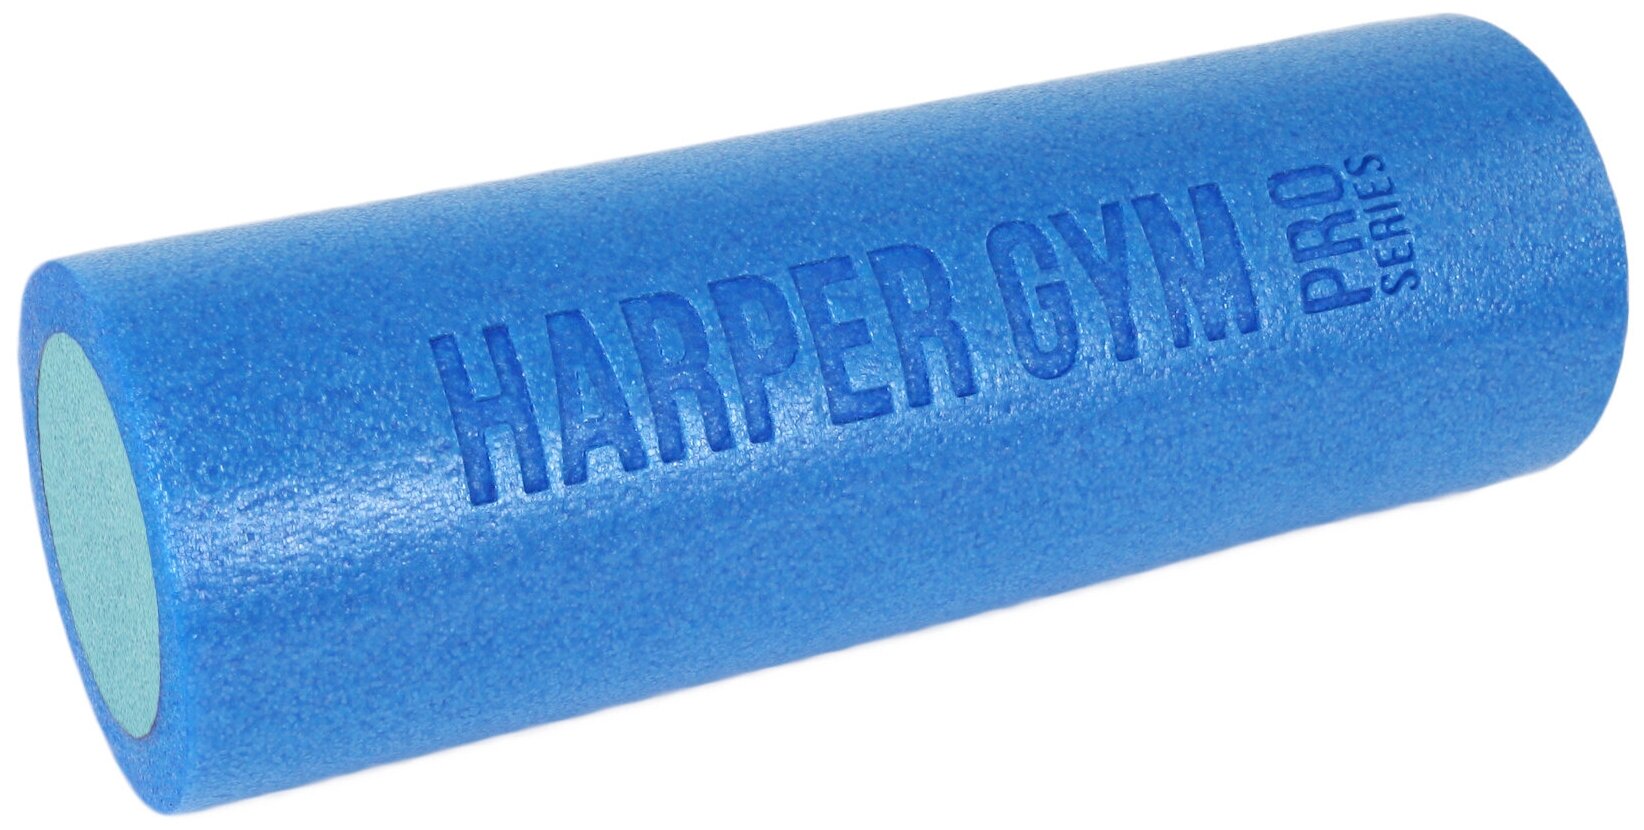 Валик для МФР Harper Gym Pro Series NT40152 45*15см, синий/голубой